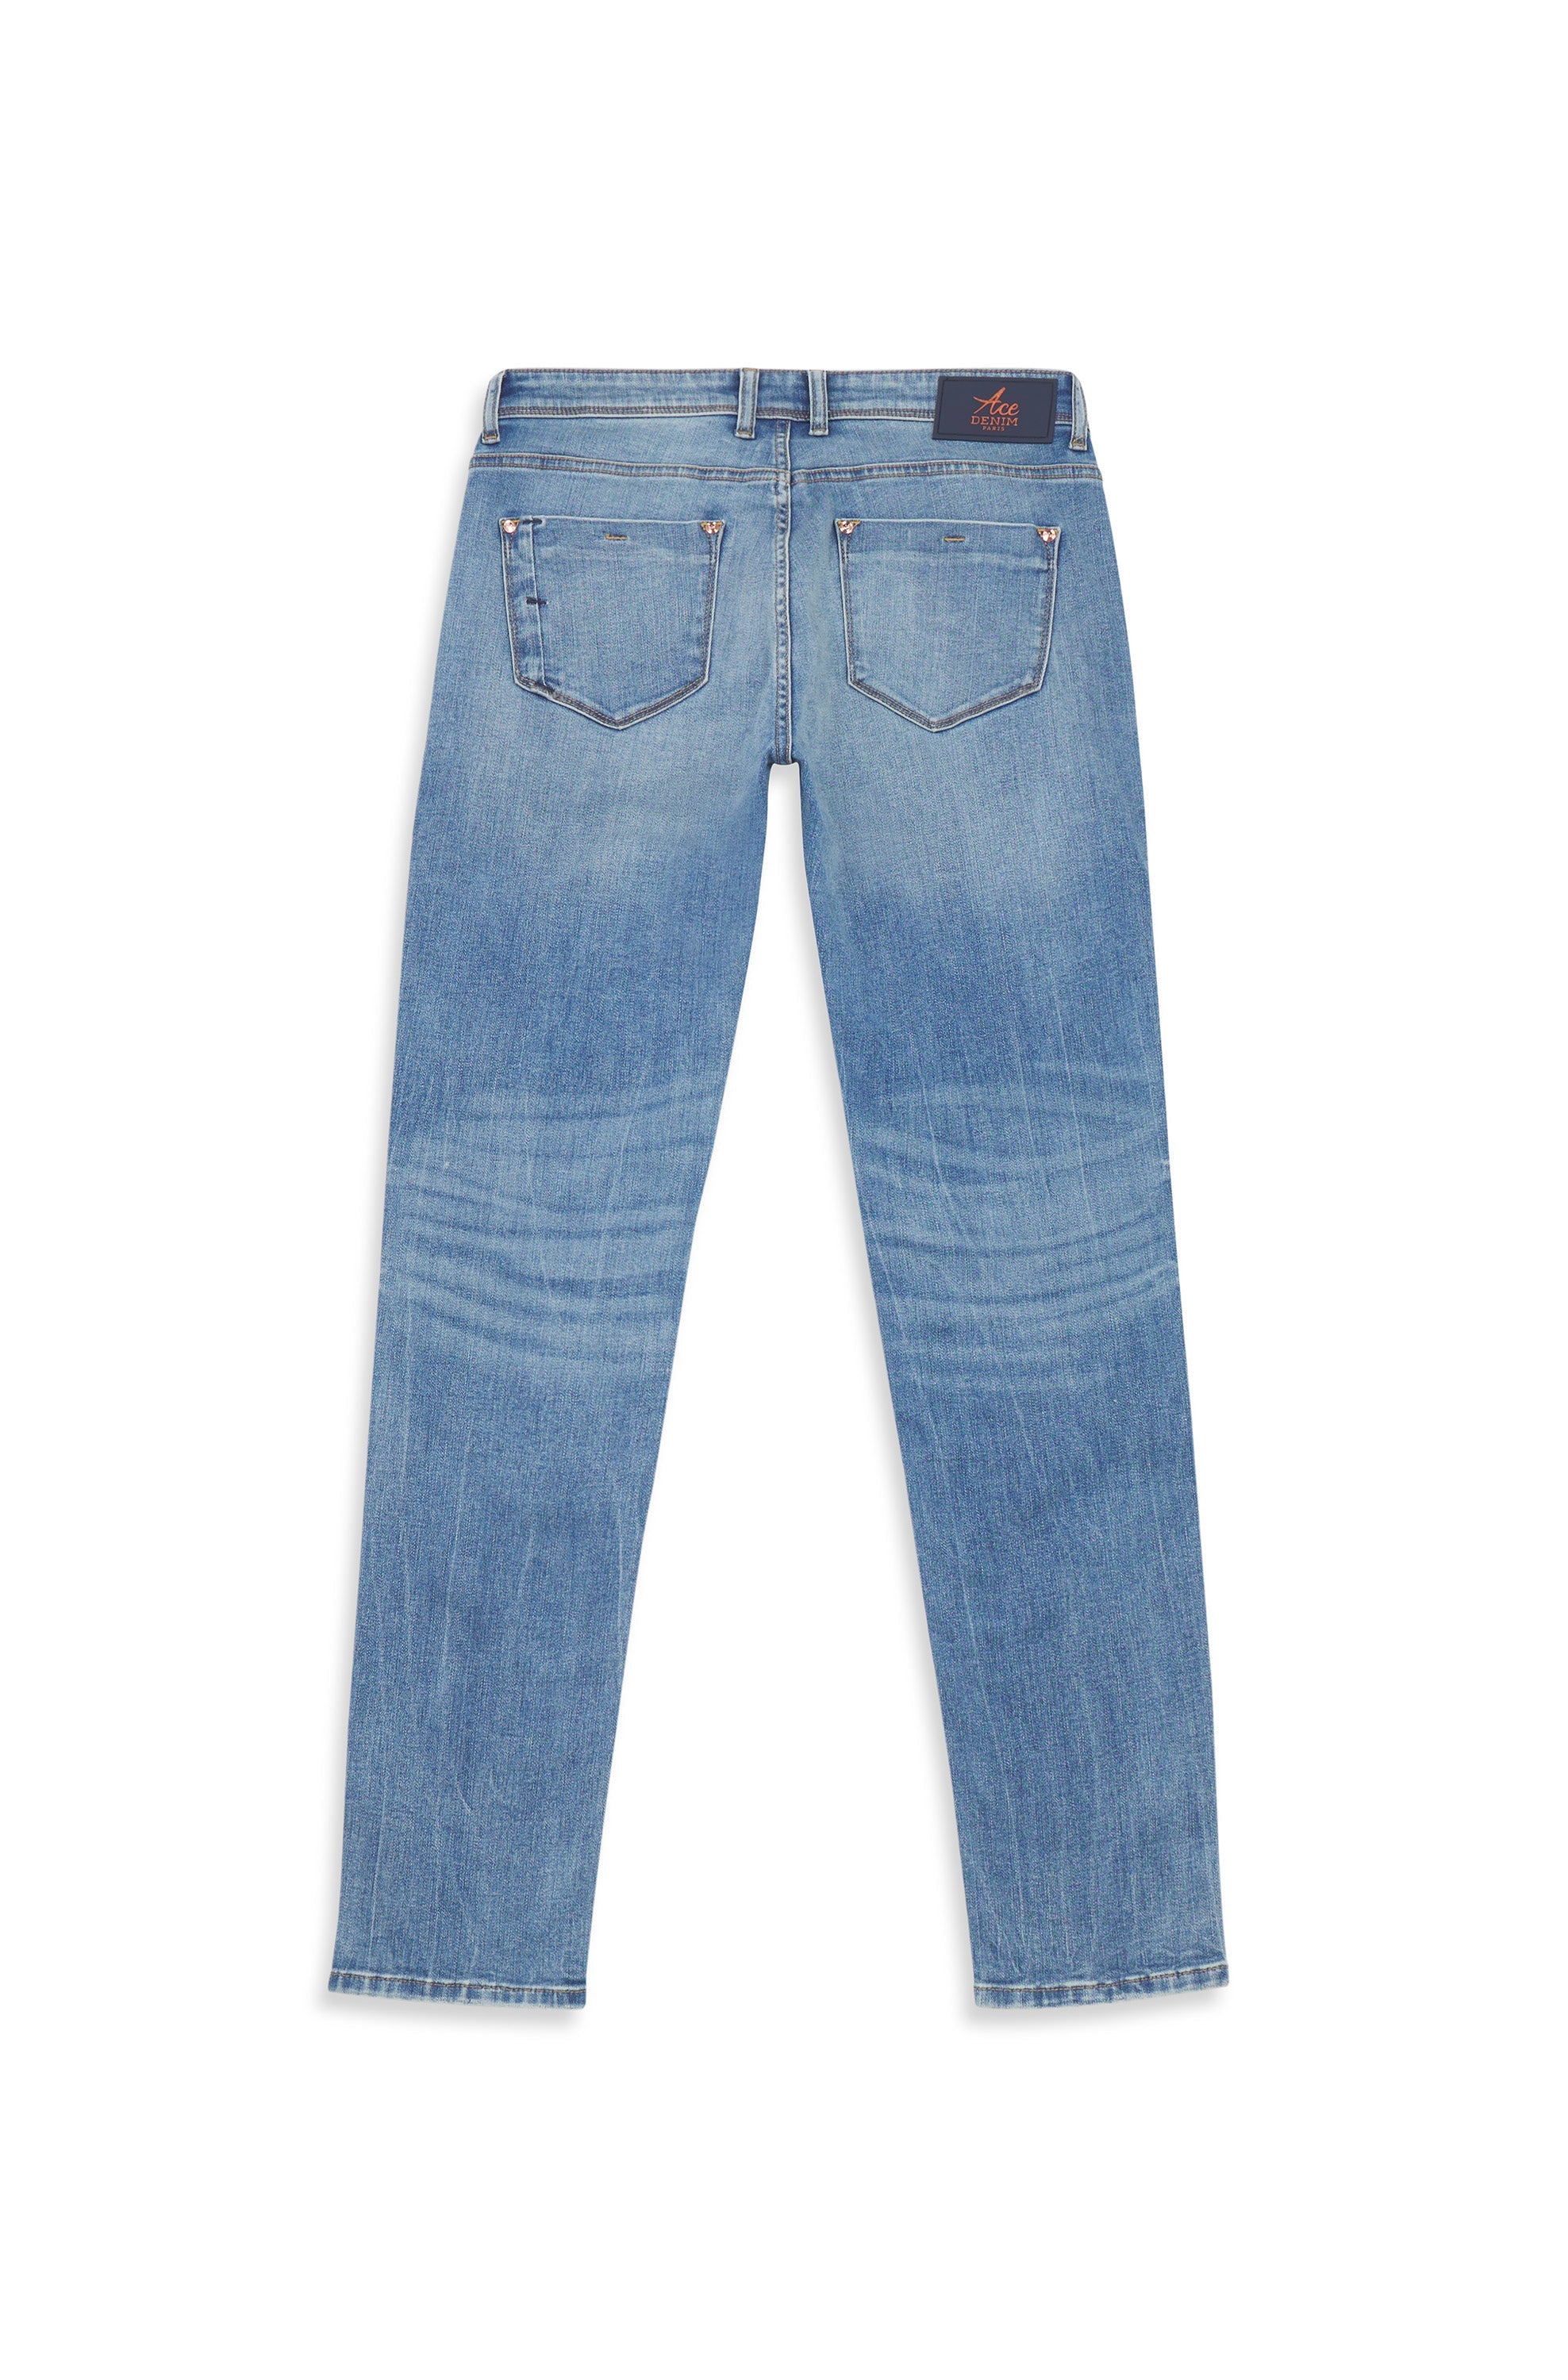 Wide-Leg Jeans, Frayed Hems, for Girls - denim blue, Girls